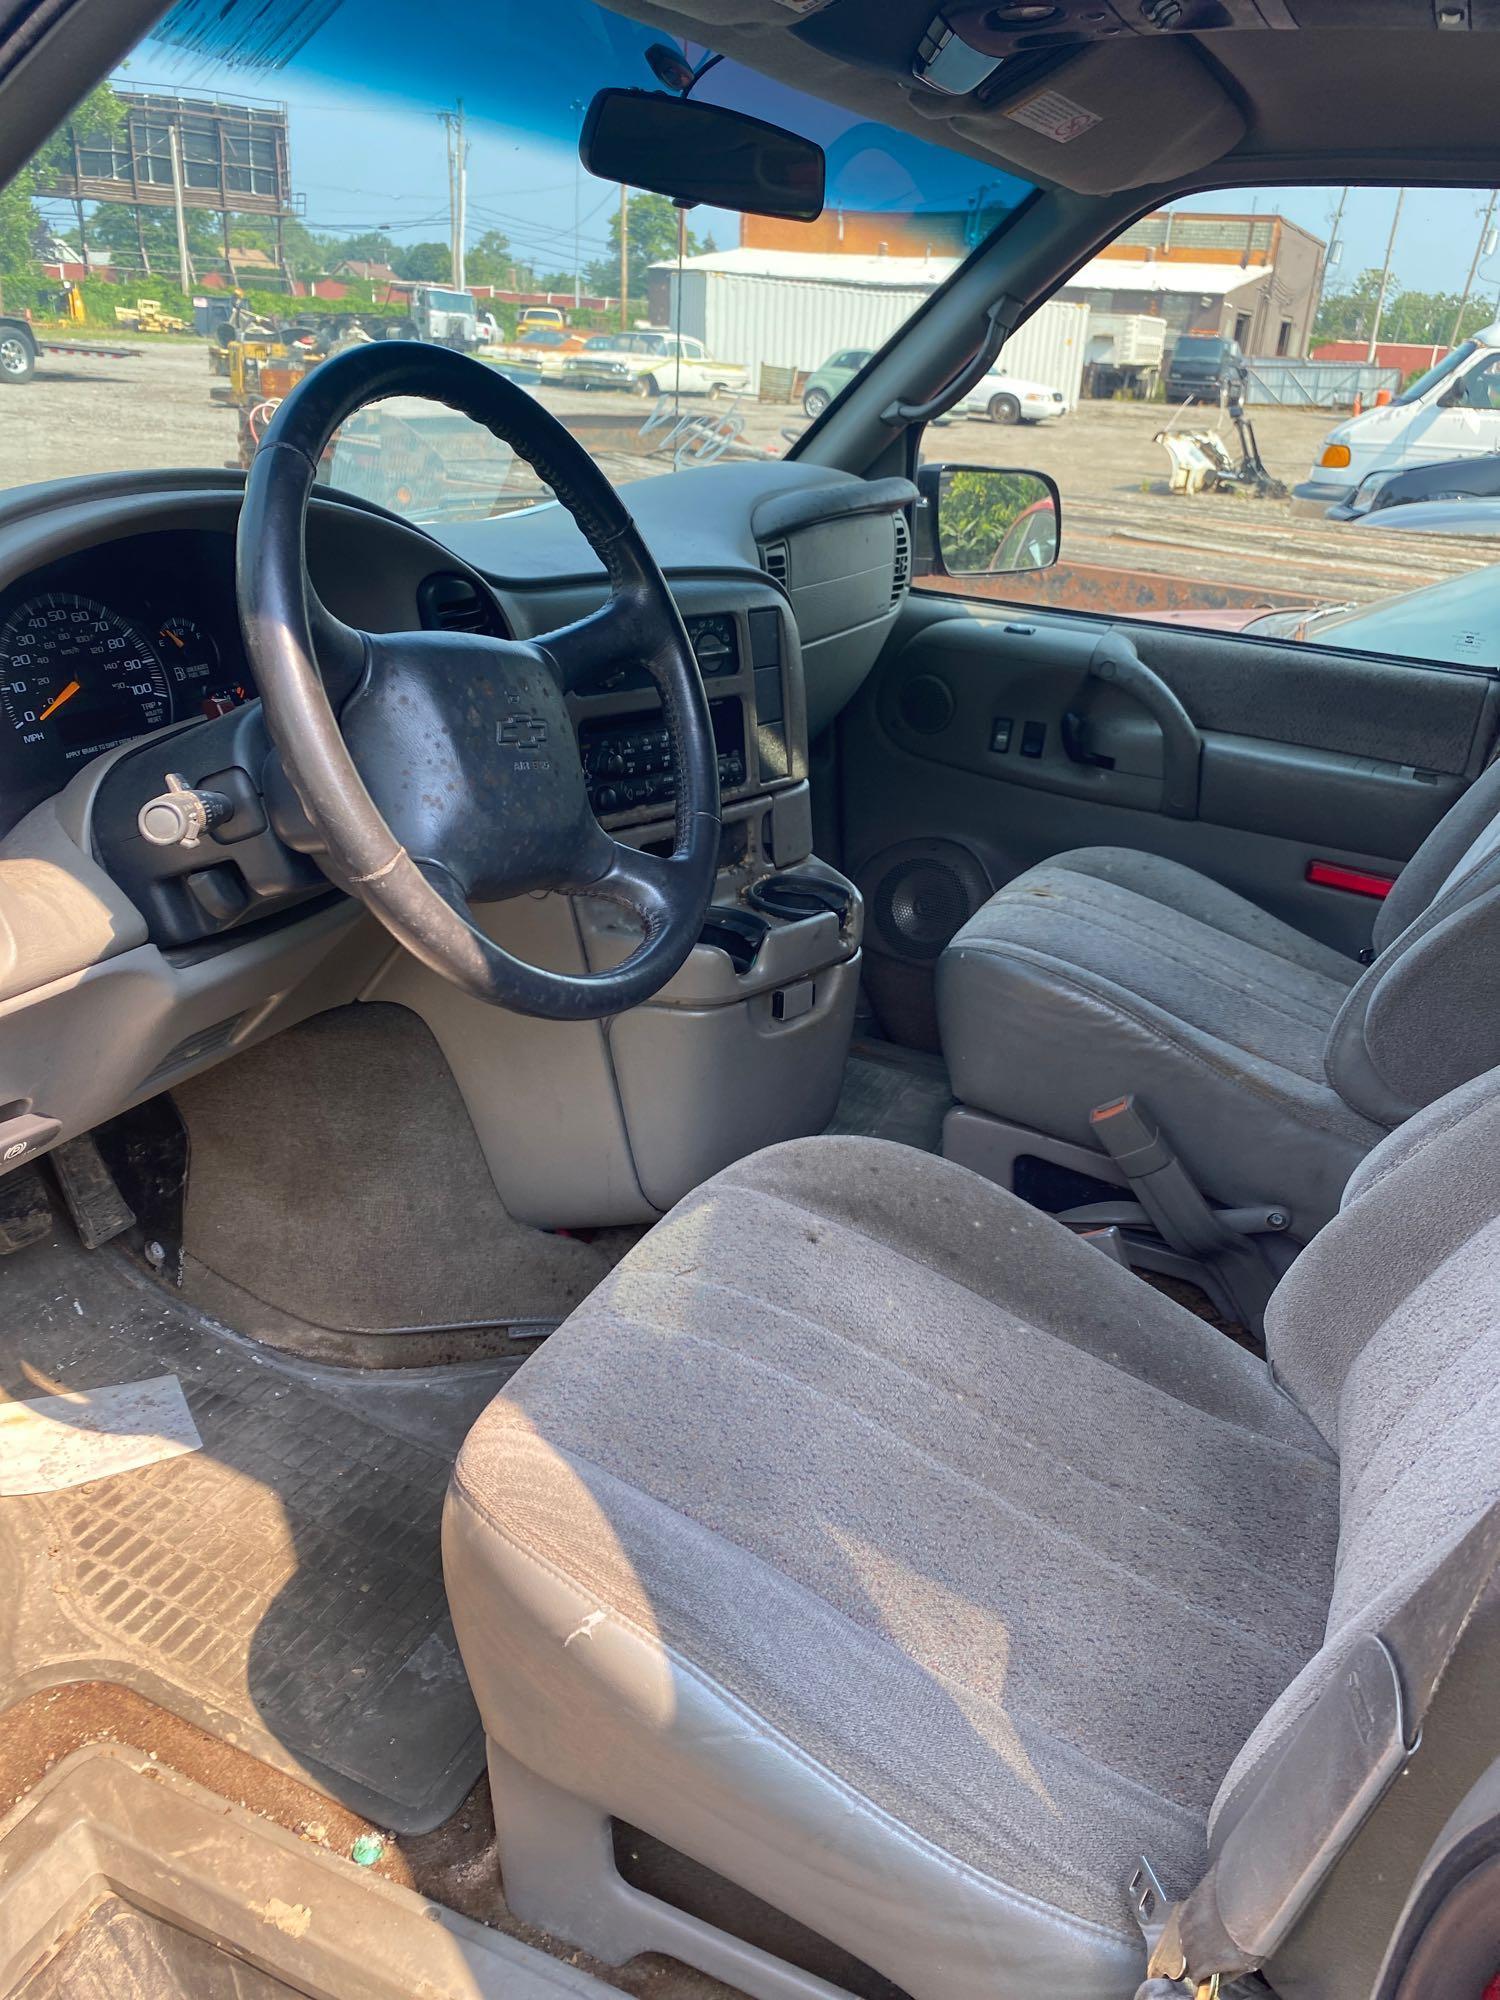 2000 Chevy Astro Van